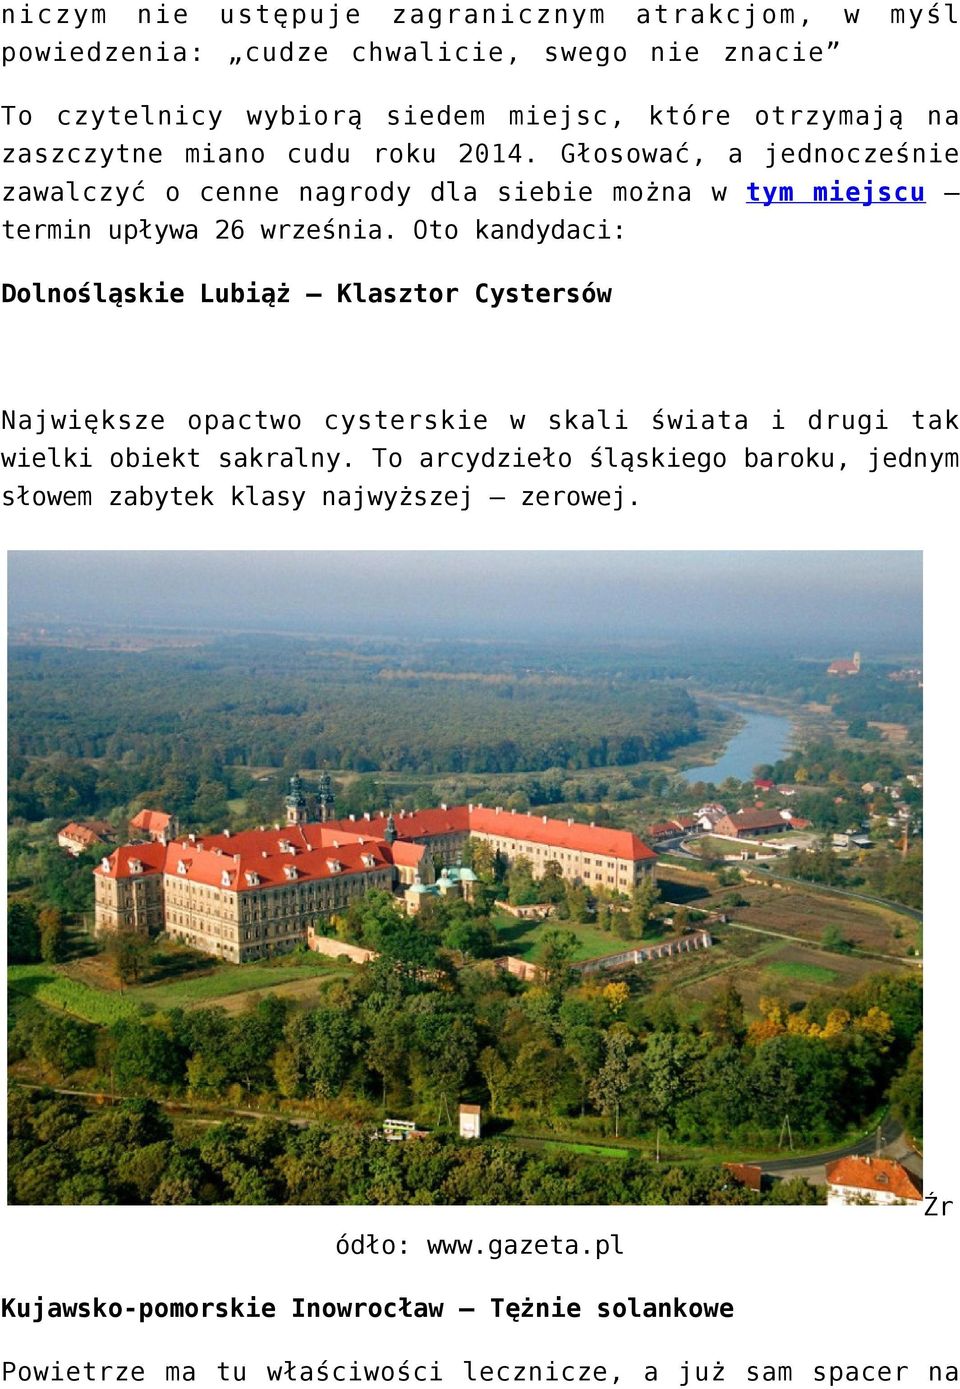 Oto kandydaci: Dolnośląskie Lubiąż Klasztor Cystersów Największe opactwo cysterskie w skali świata i drugi tak wielki obiekt sakralny.